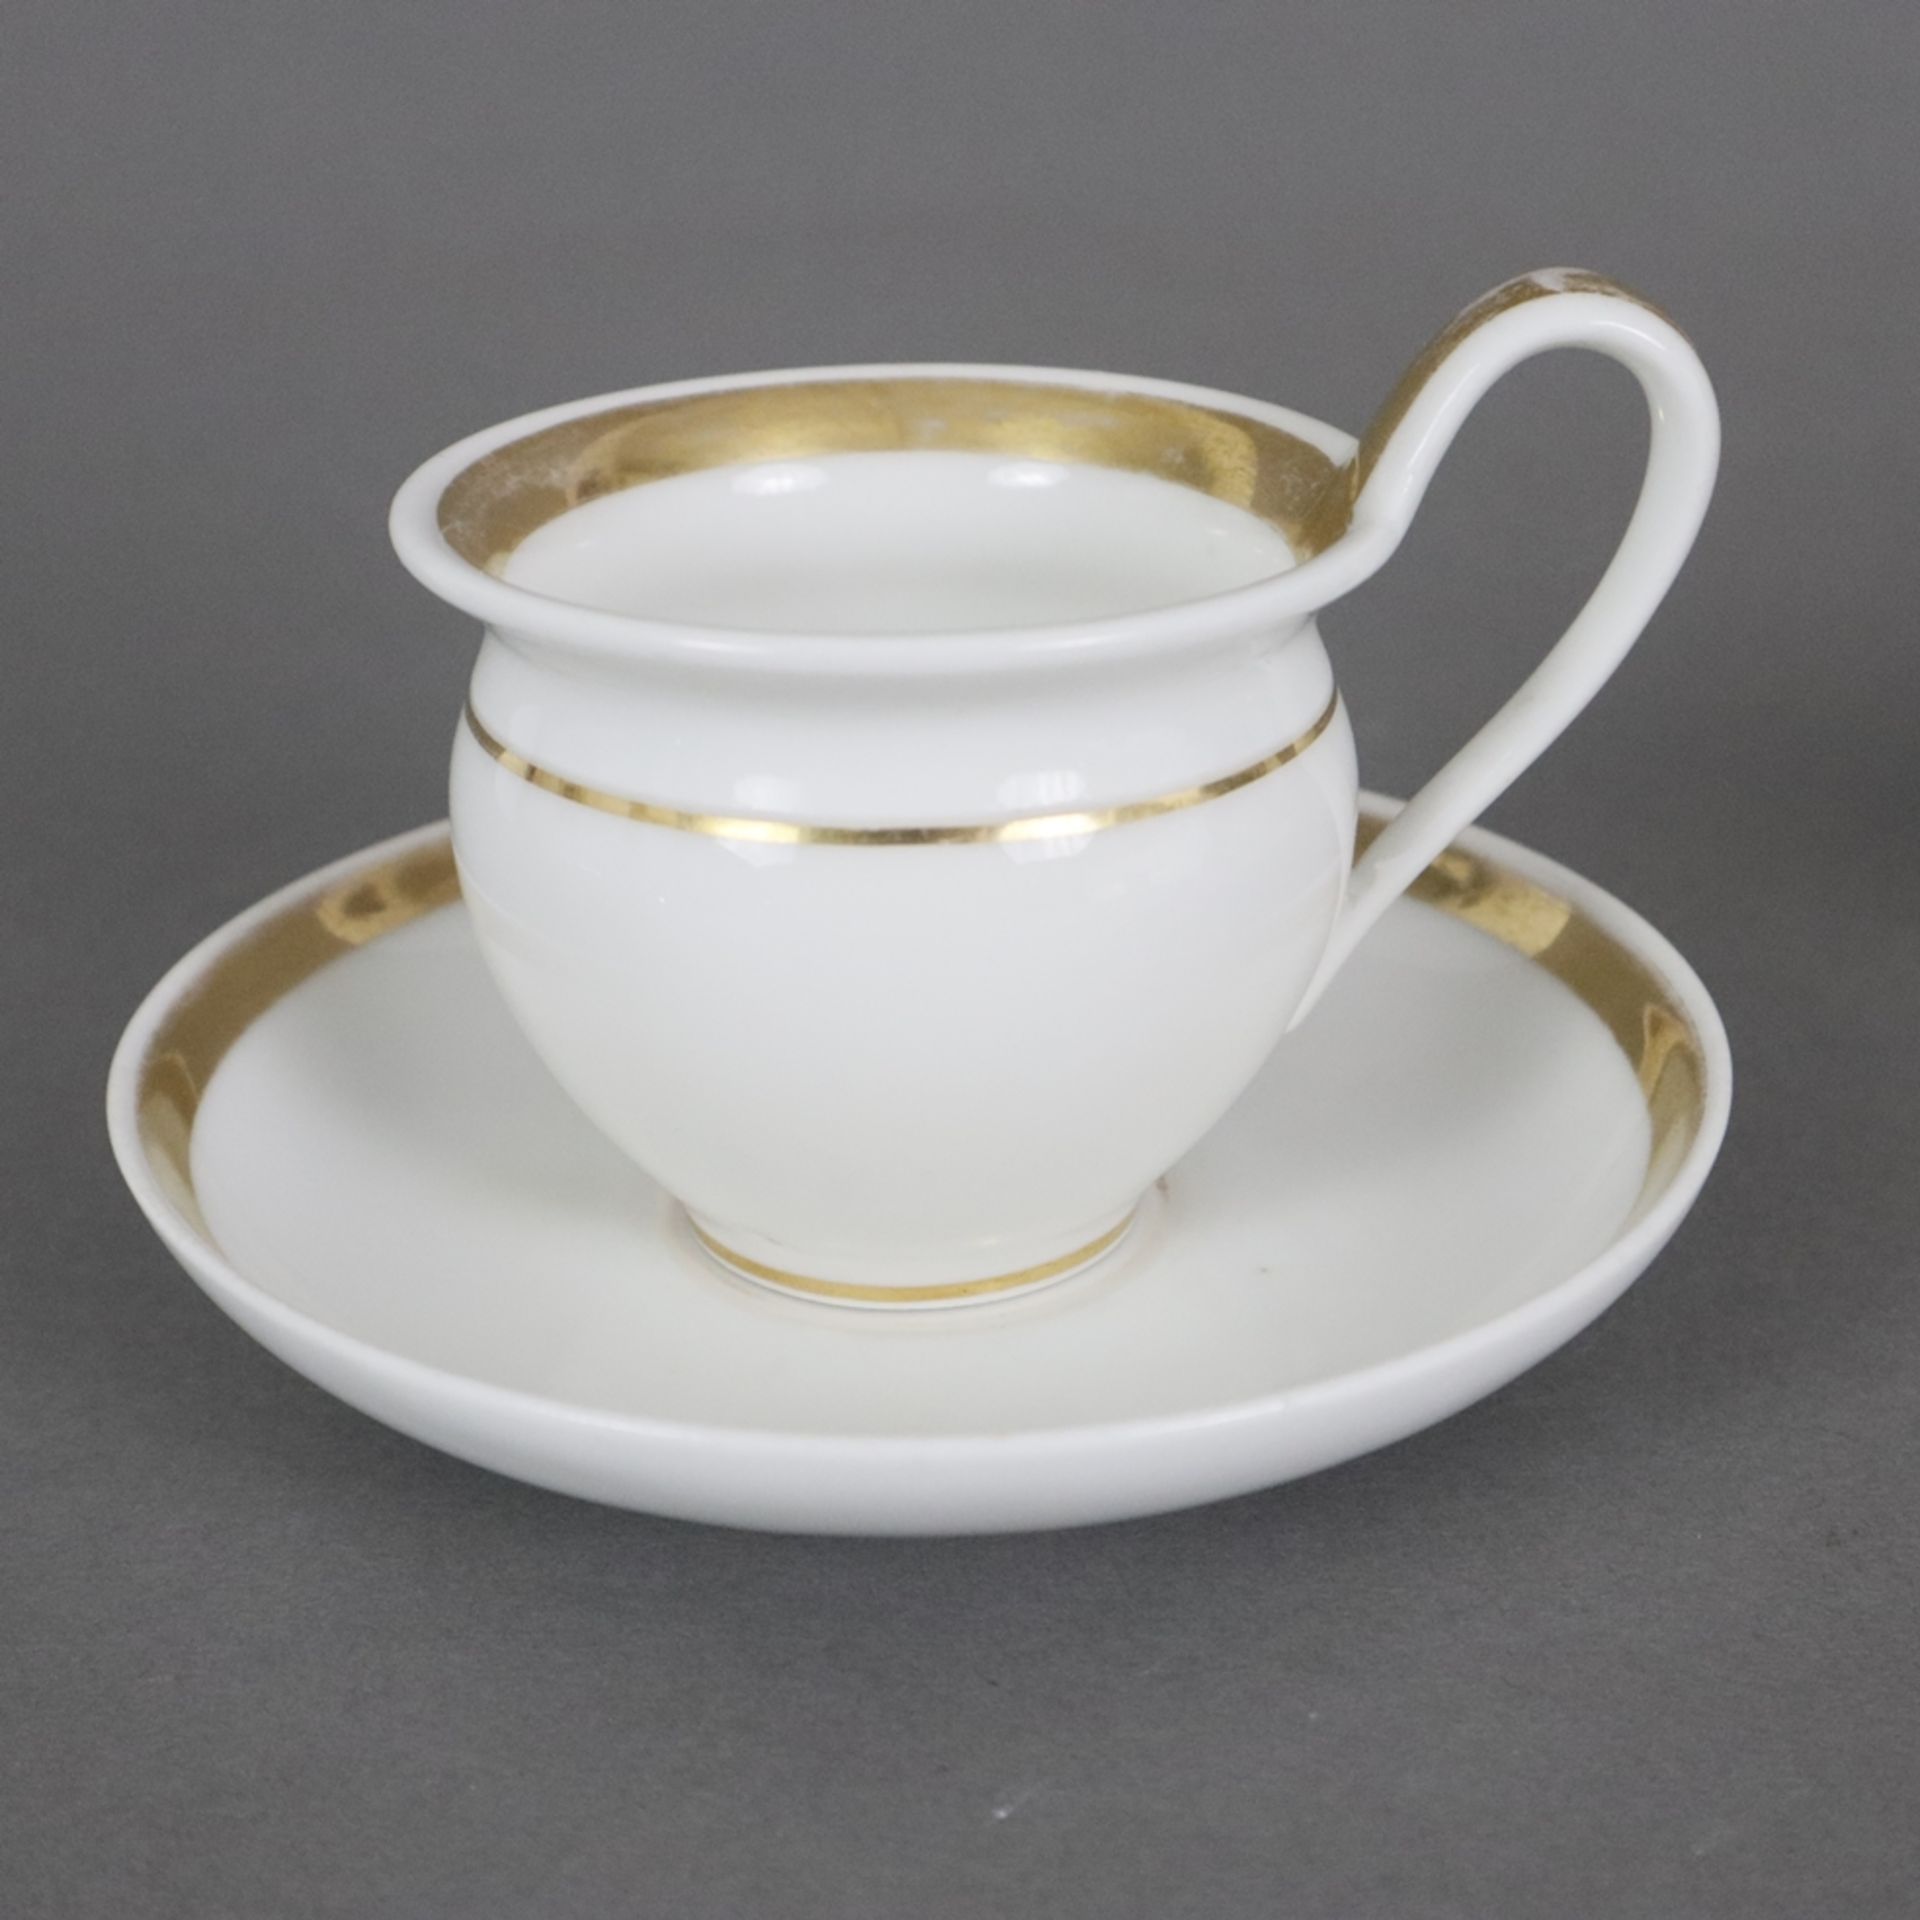 Russische Teekanne und zwei Empire-Tassen - Porzellan, 1x kleine Teekanne, Lomonosov, St. Petersbur - Bild 2 aus 10